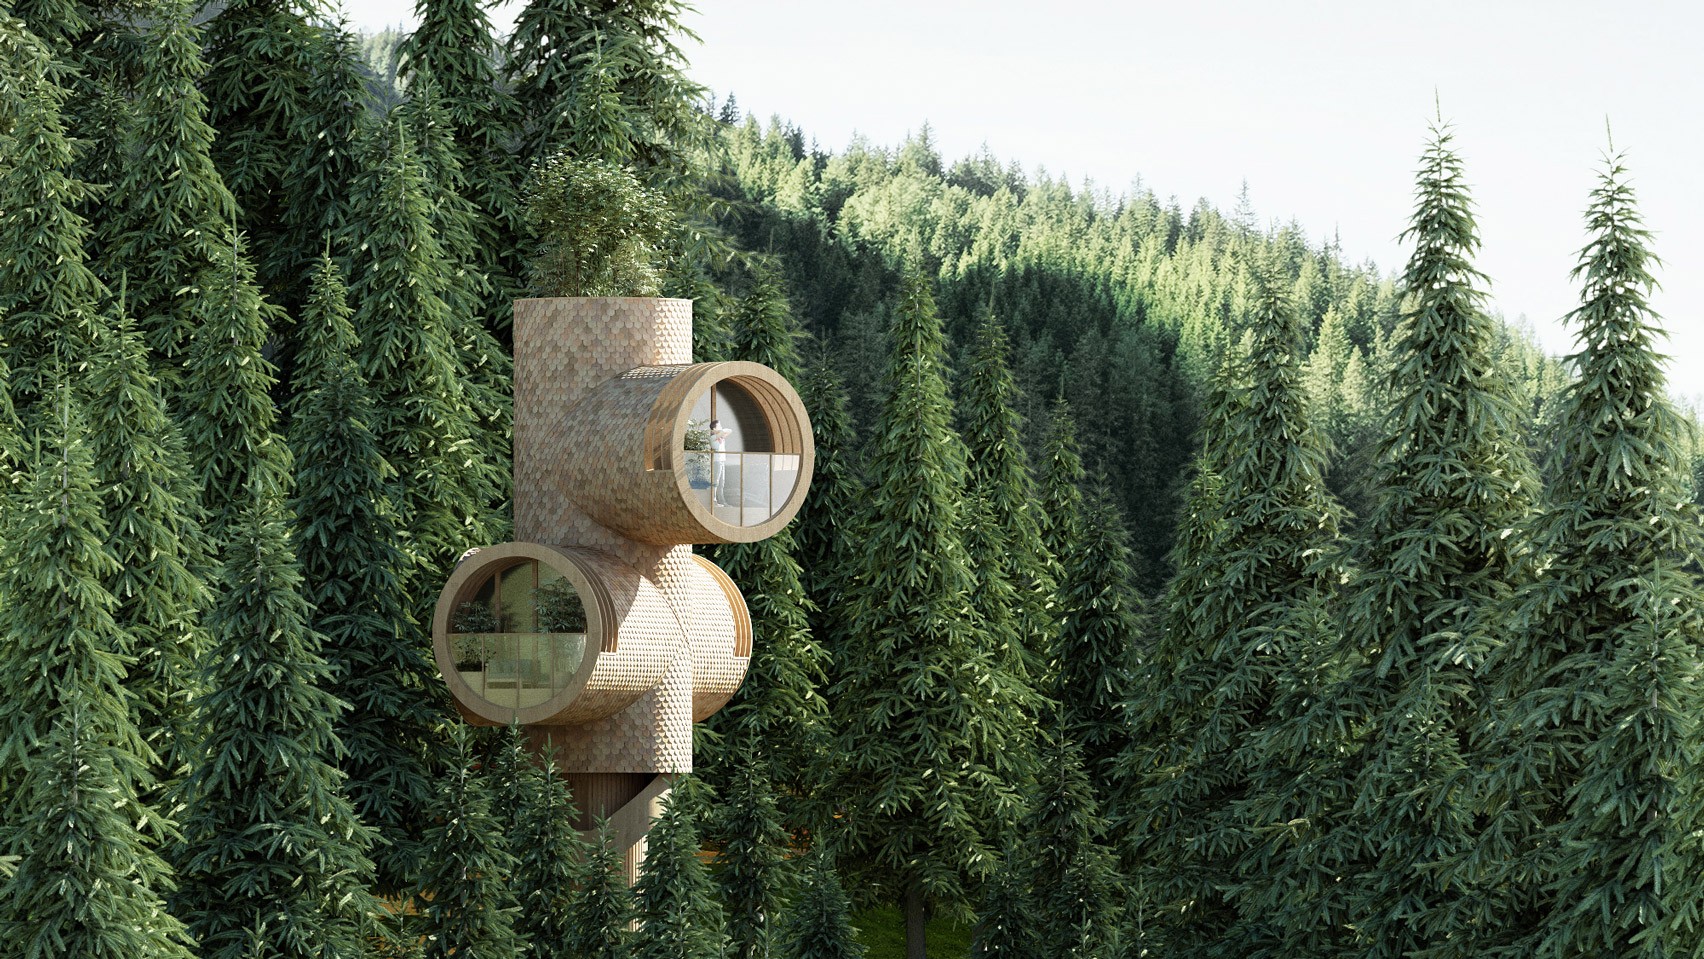 Estúdio cria casa na árvore modular que pode ser empilhada (Foto: Reprodução)